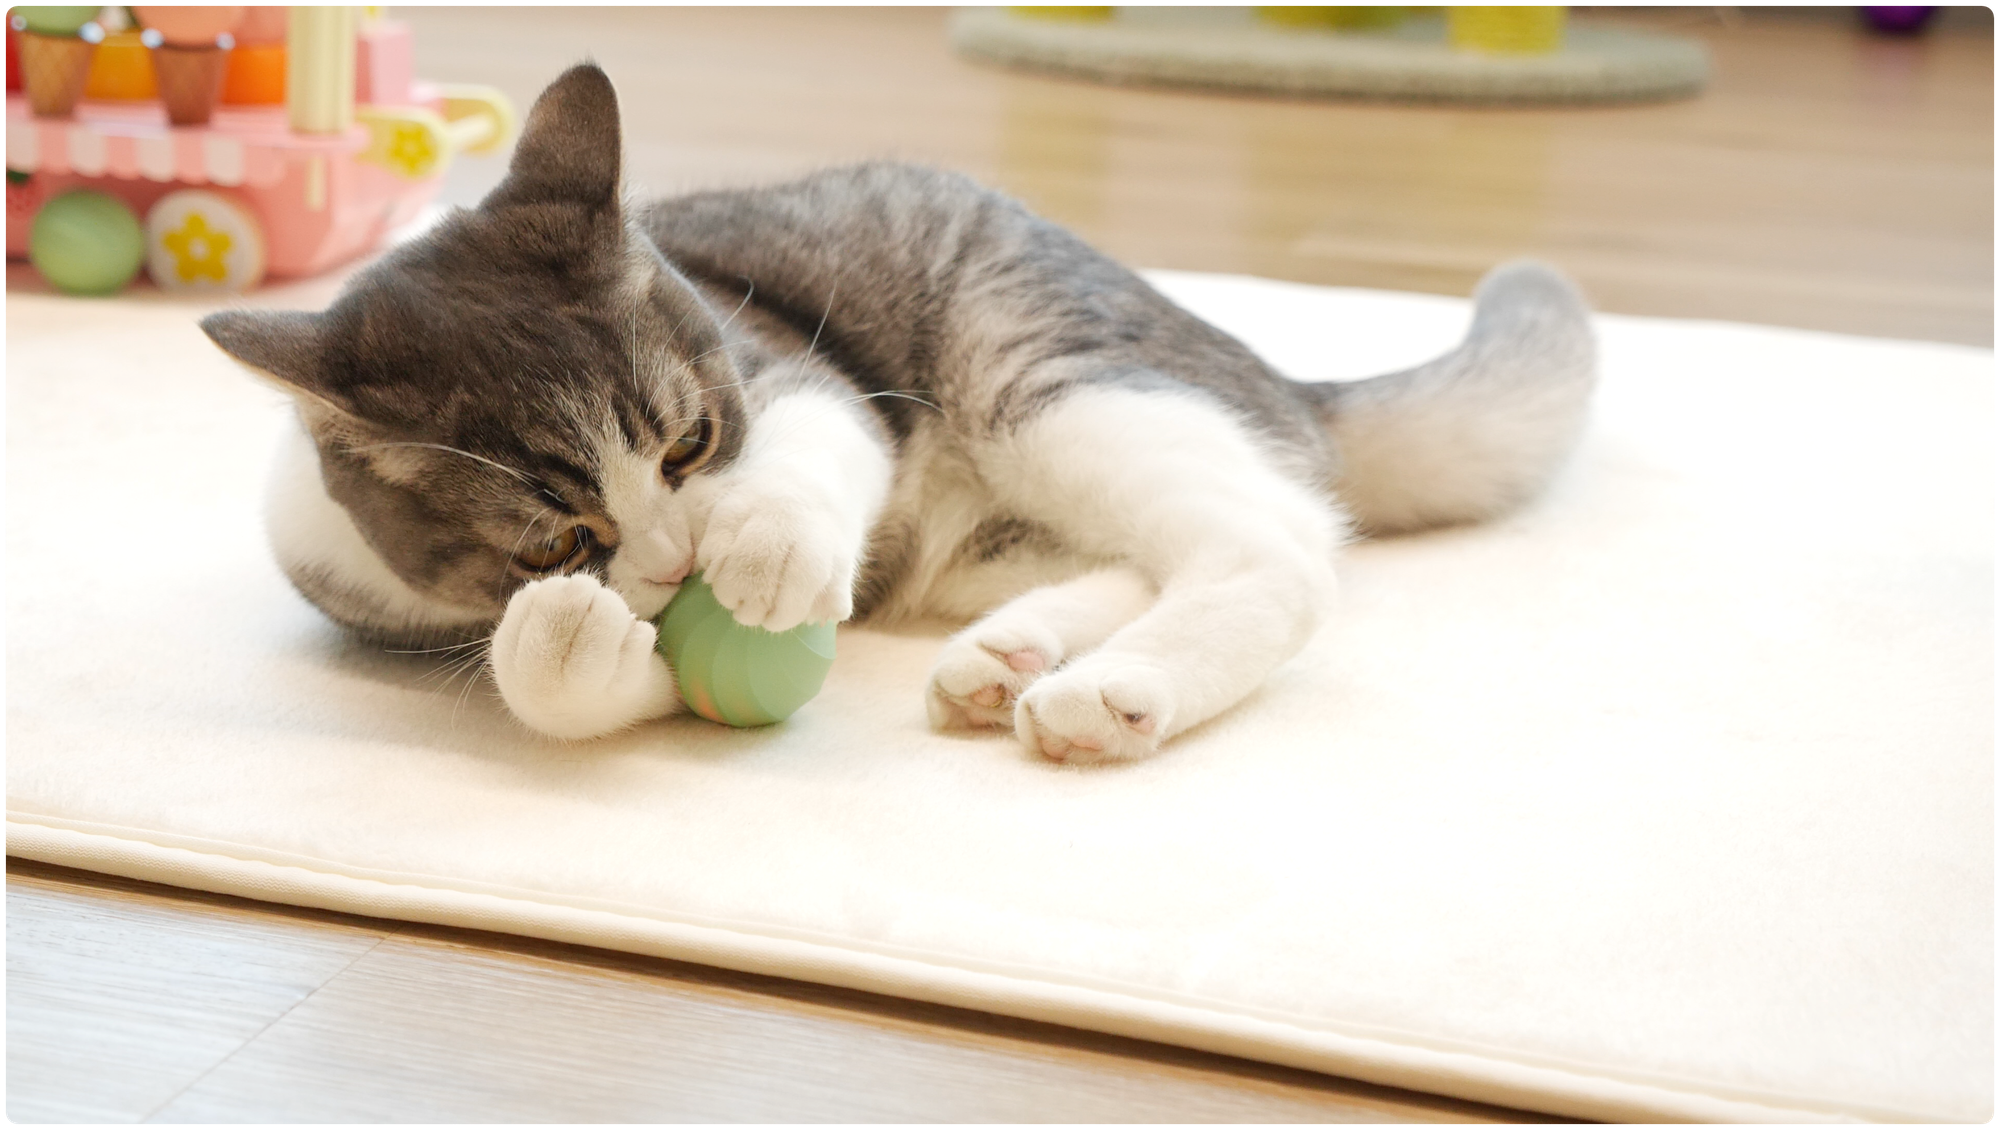 Cheerble Ice Cream интерактивная игрушка мячик для кошки и котят, развивающая игрушка для кота, умный шарик, USB зарядка - фотография № 9